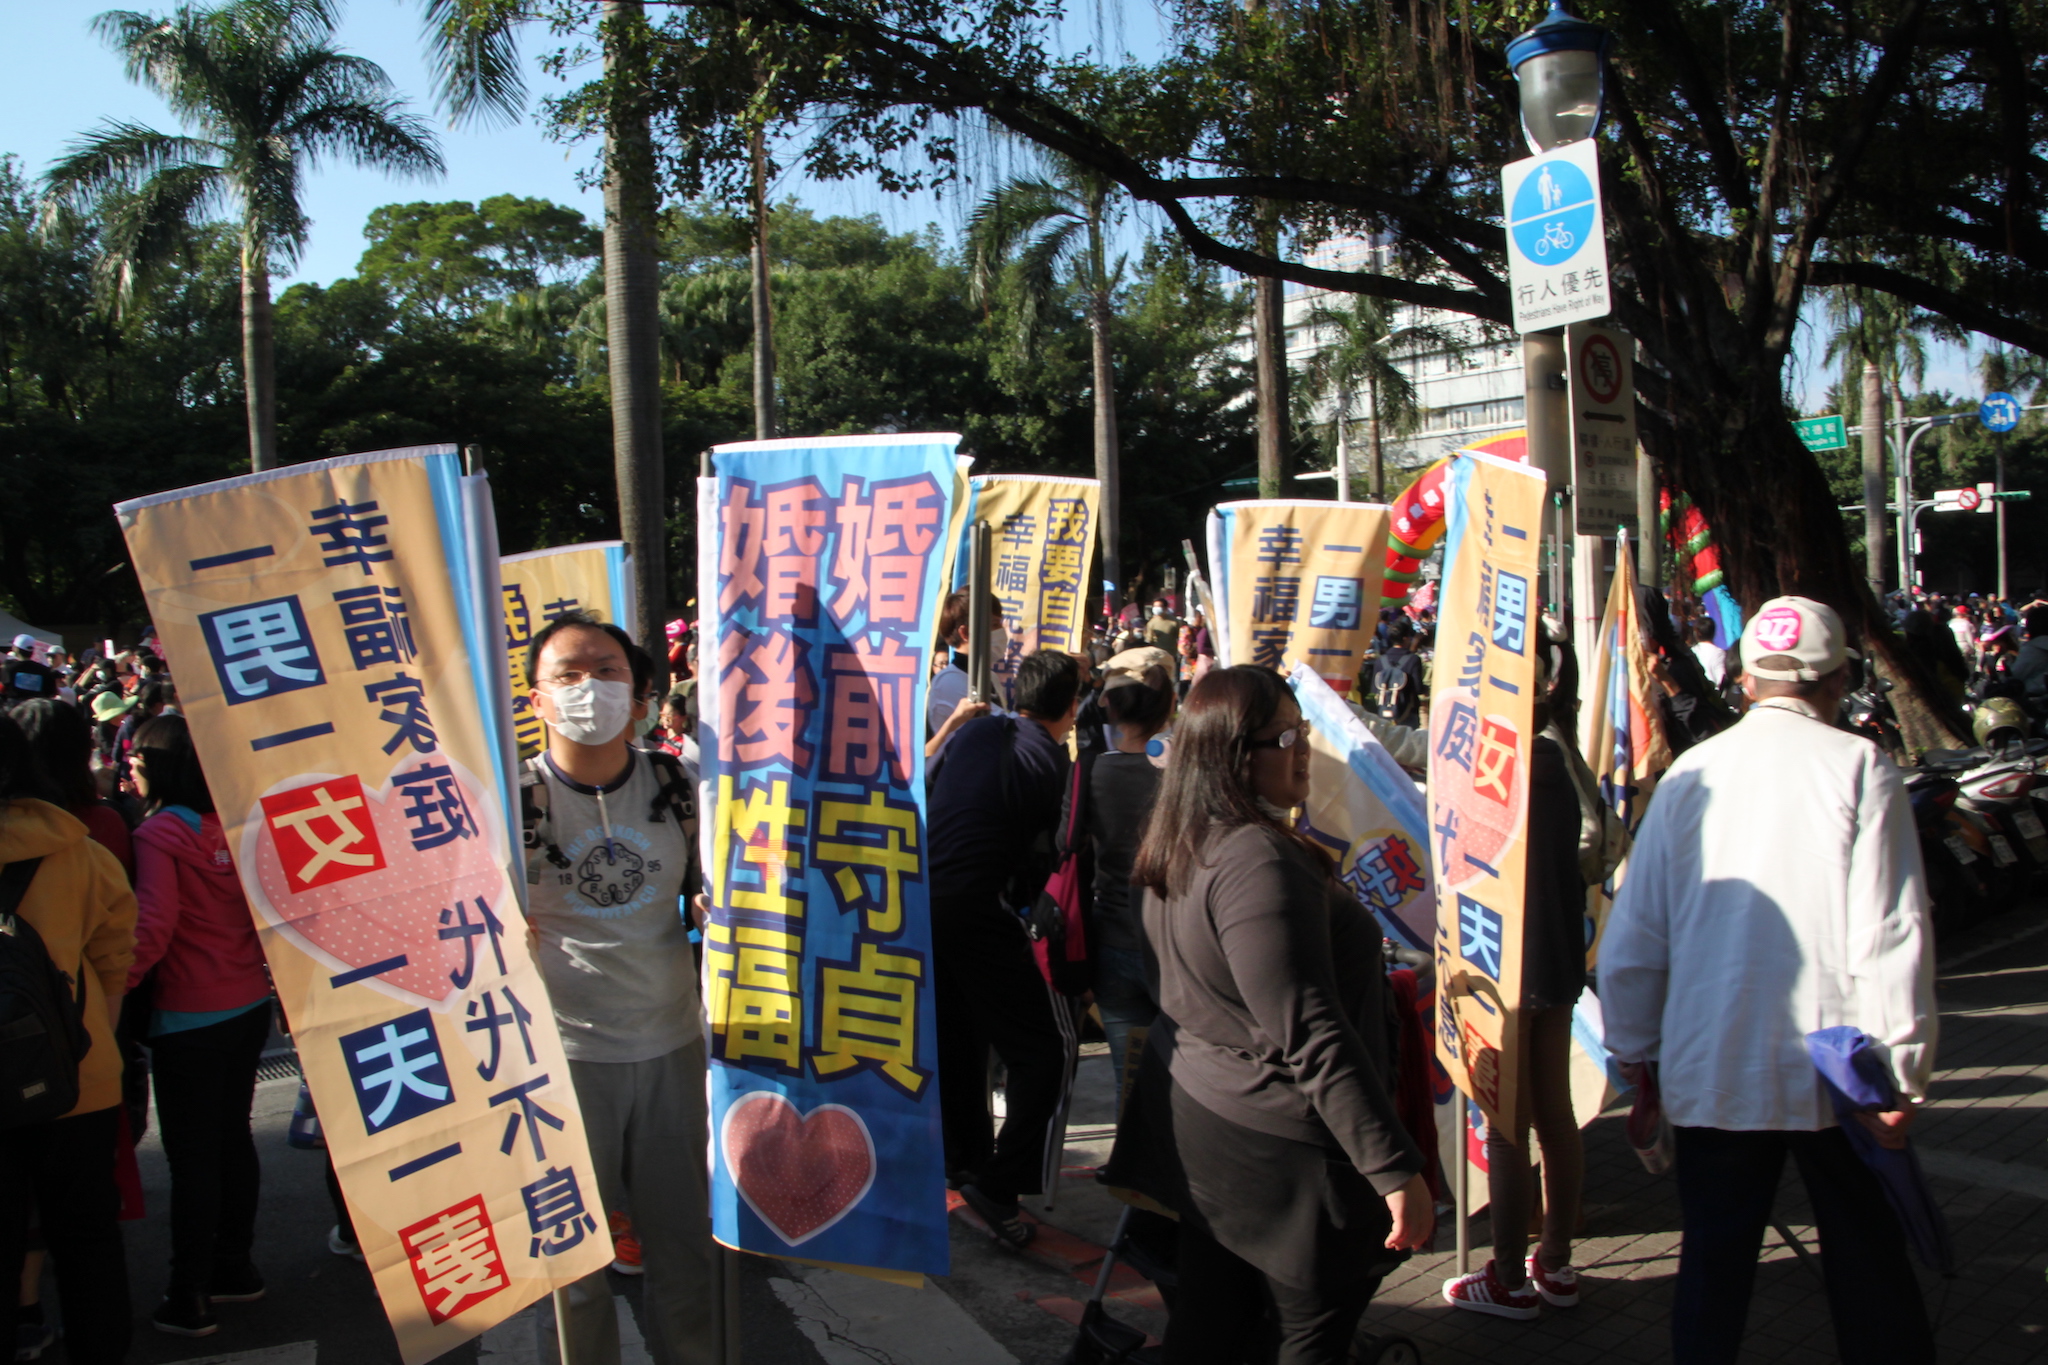 台灣宗教團體愛護家庭大聯盟發起遊行主張「一男一女」、「一夫一妻」的婚姻價值（攝影：何宇軒）